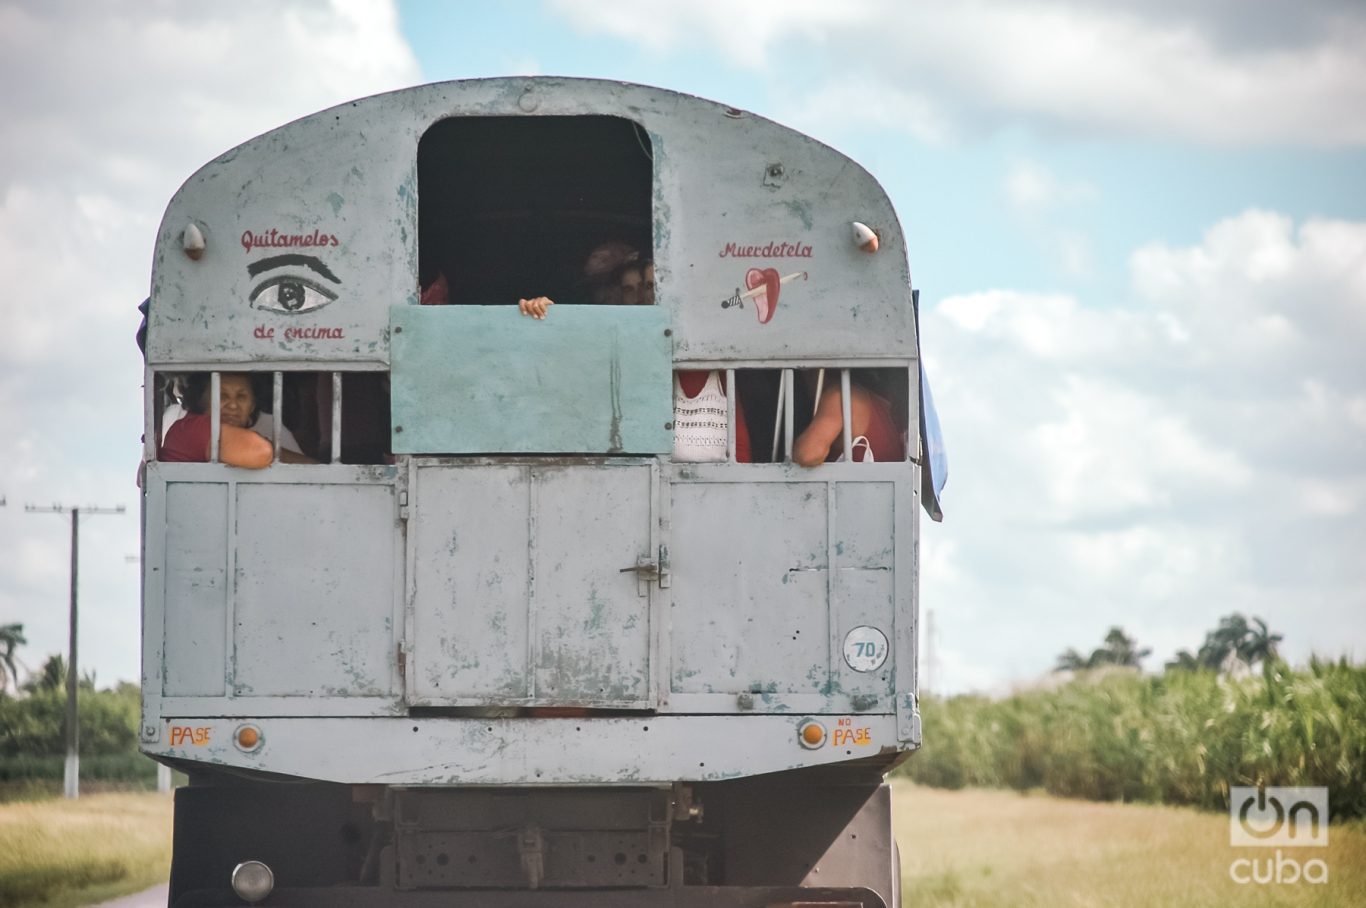 Un camión de transporte de pasajeros por la carretera central de Cuba. Foto: Kaloian.
